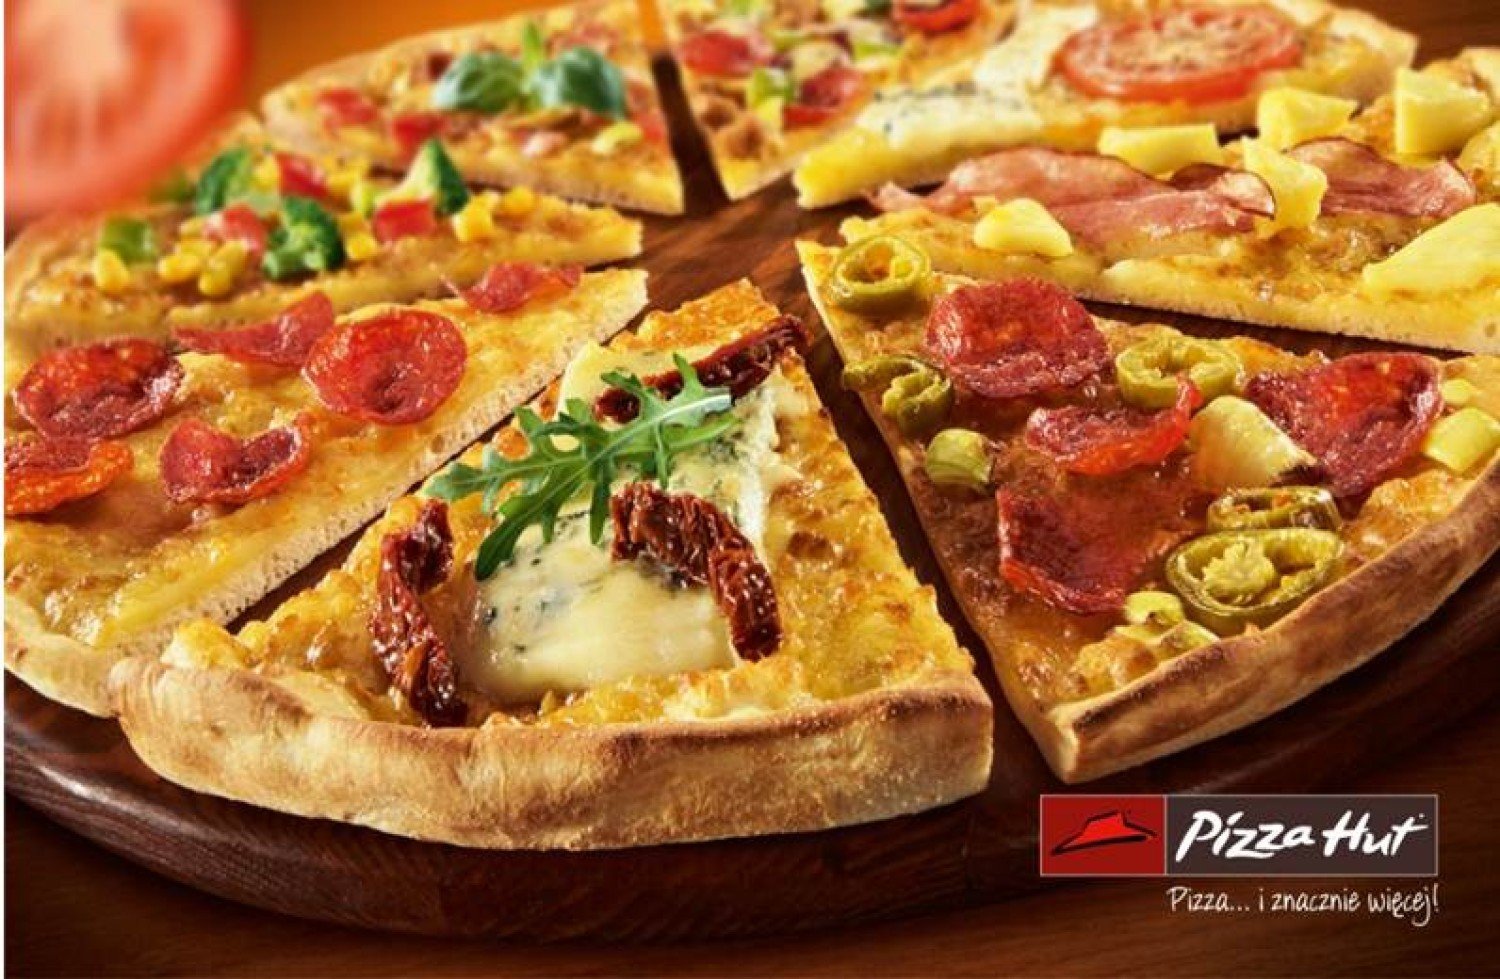 Festiwal Pizzy w Pizza Hut. Wygraj zaproszenia na pyszną pizzę! | Warszawa  Nasze Miasto